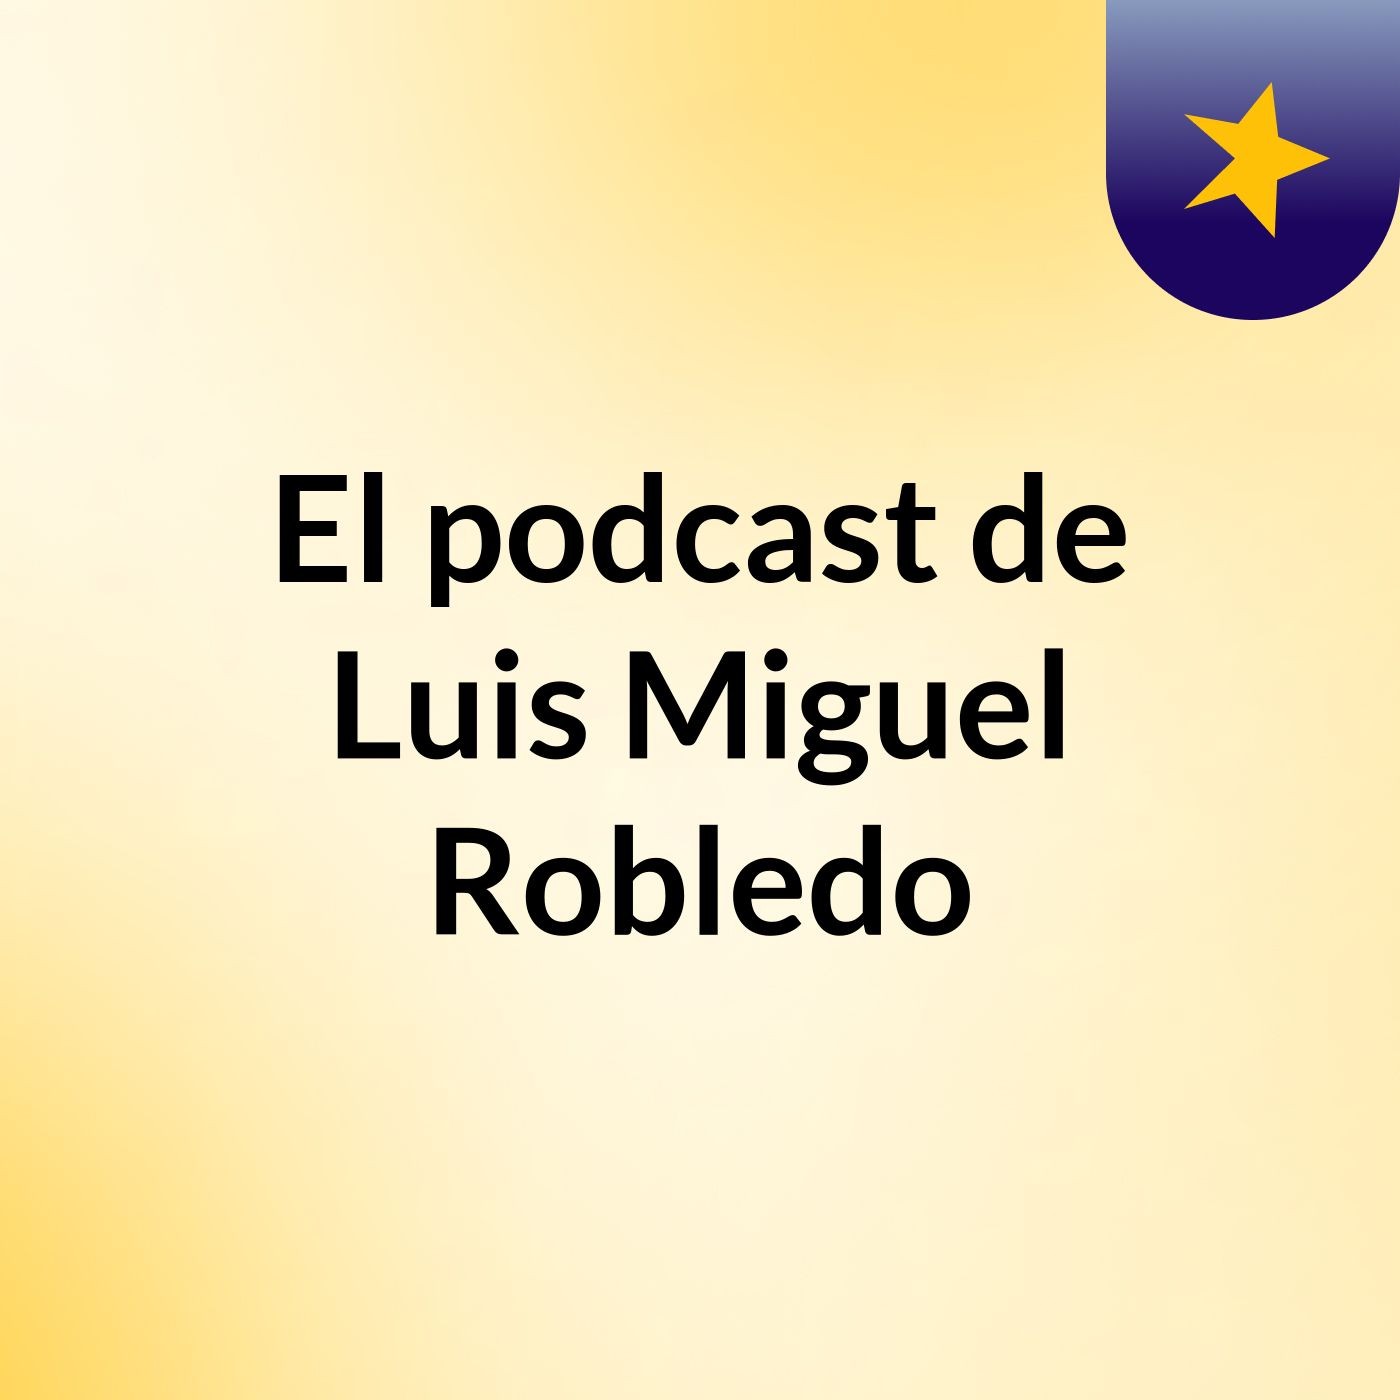 Episodio 3 - El podcast de Luis Miguel Robledo